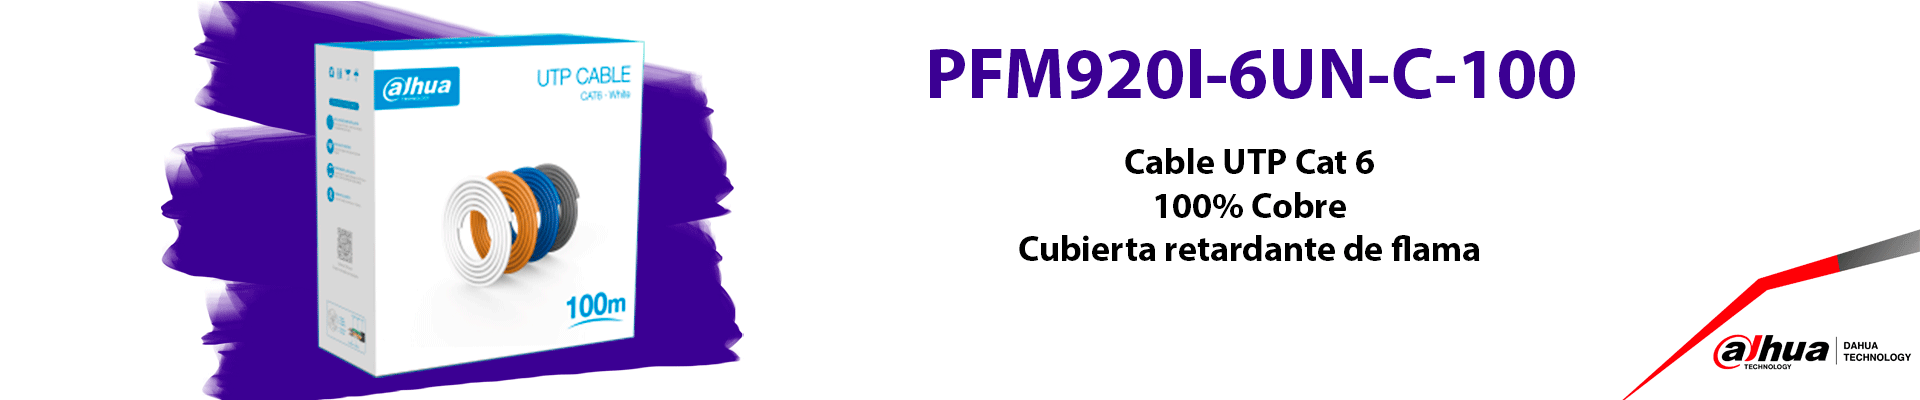 DH-PFM920I-6UN-C-100